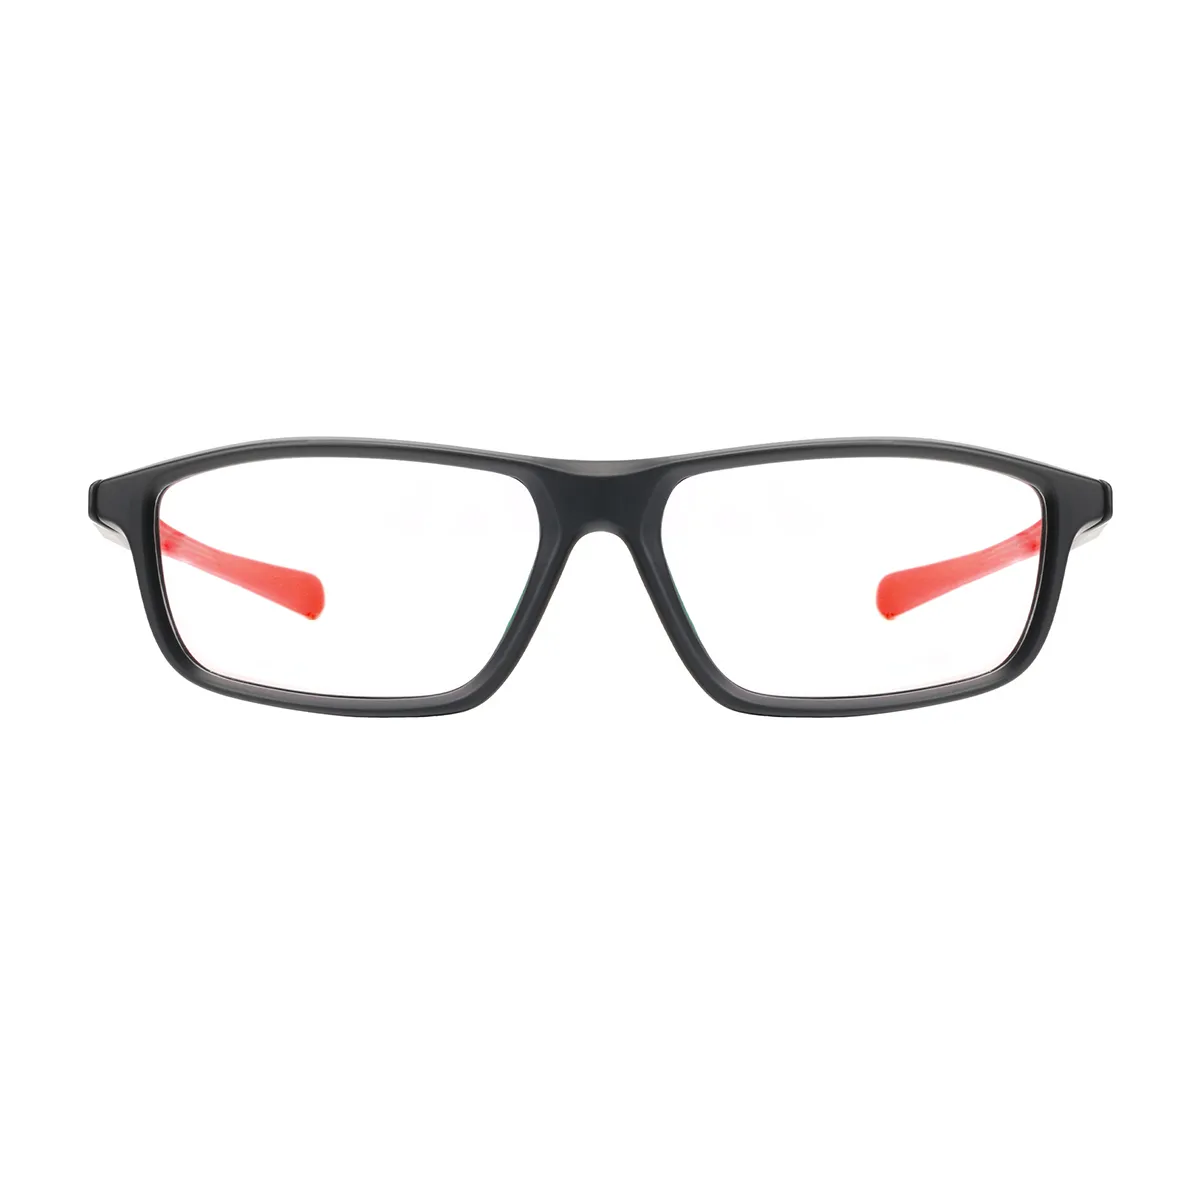 Sports Oval Black-Red  Eyeglasses for Women & Men